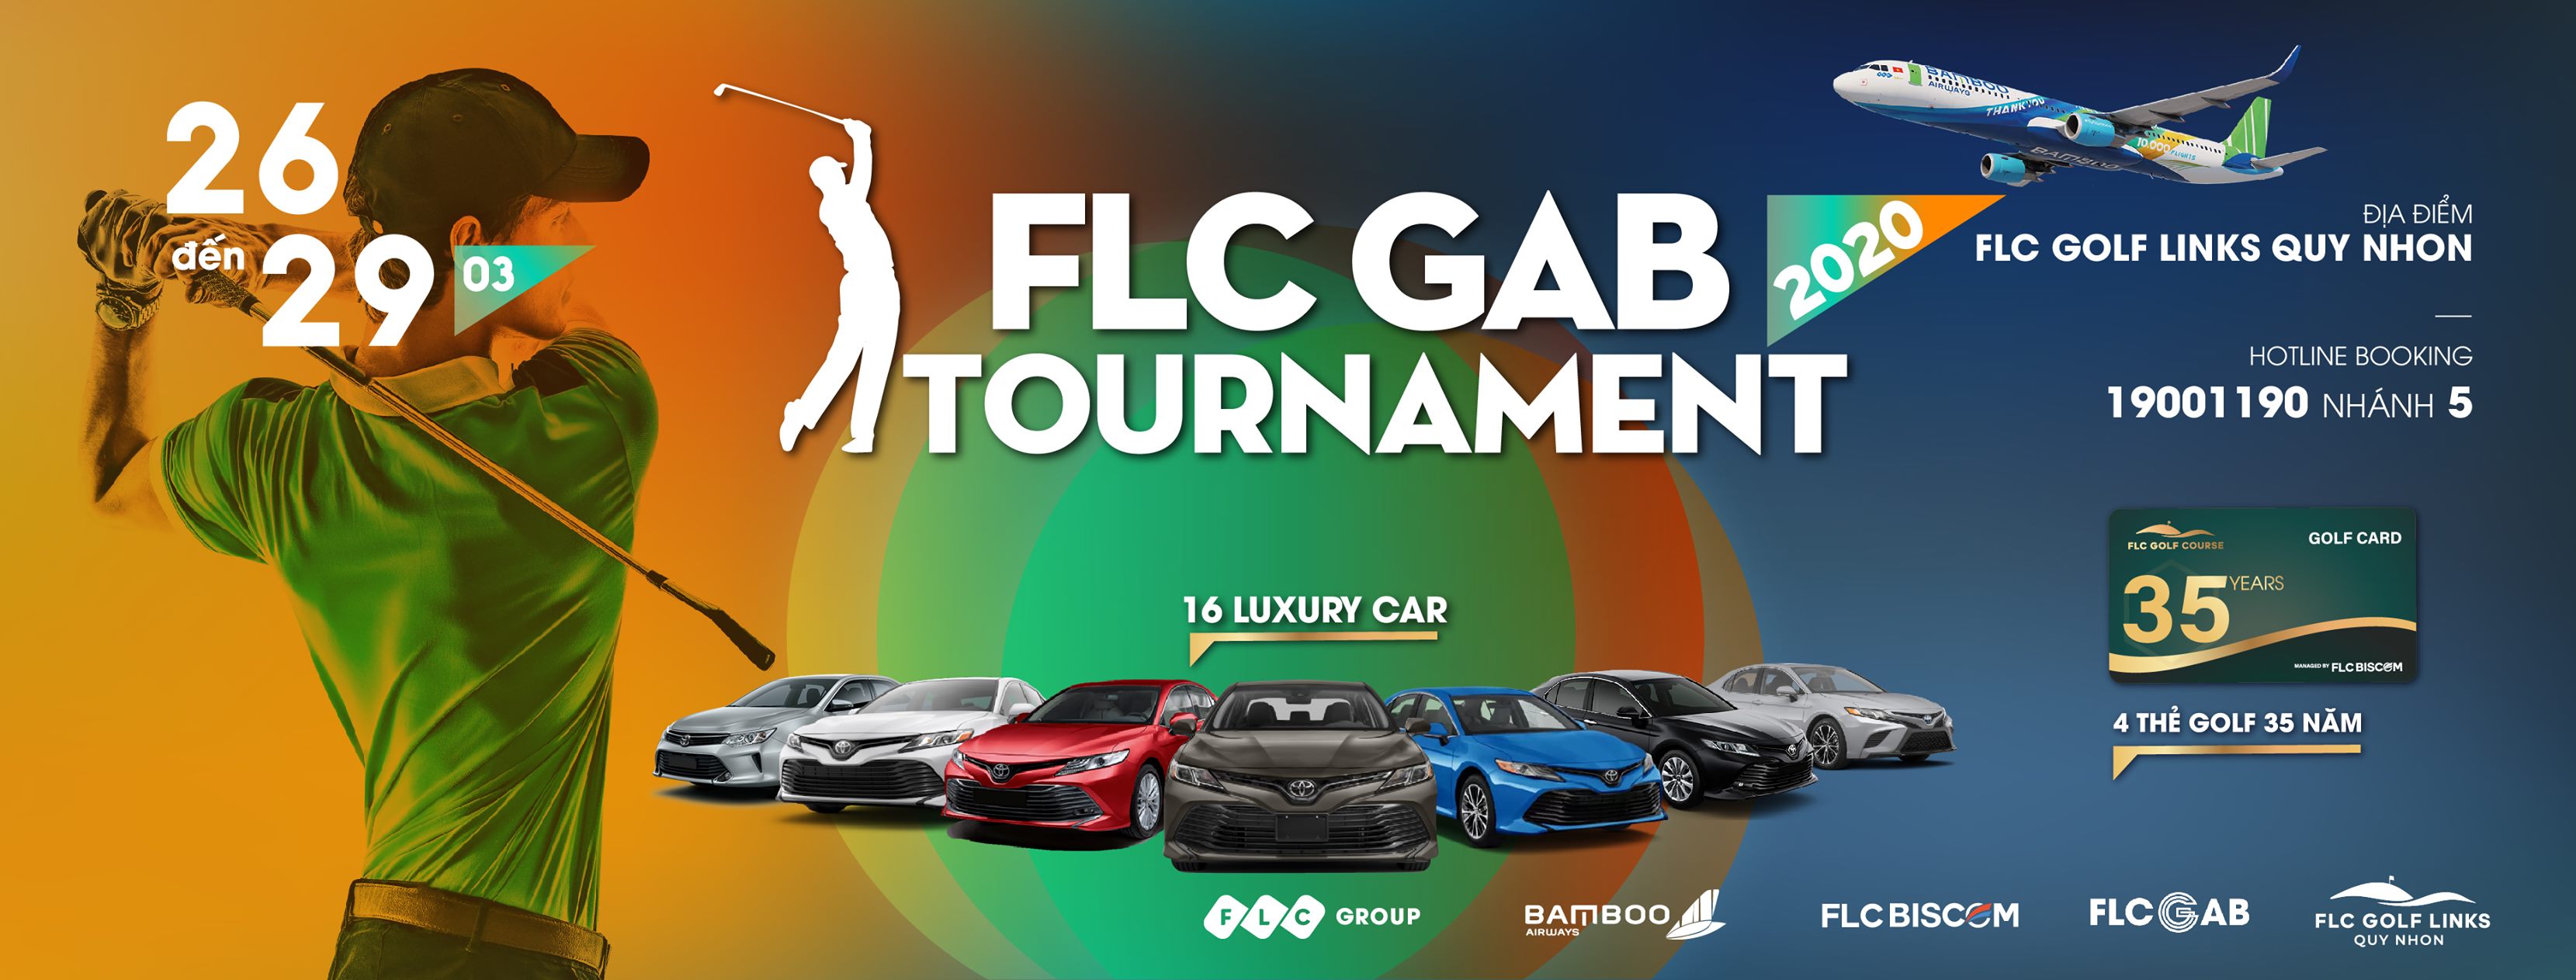 FLC GAB Tournament 2020 – Giải golf lớn thứ 3 trong năm của Tập đoàn FLC khởi tranh vào cuối tháng 3.